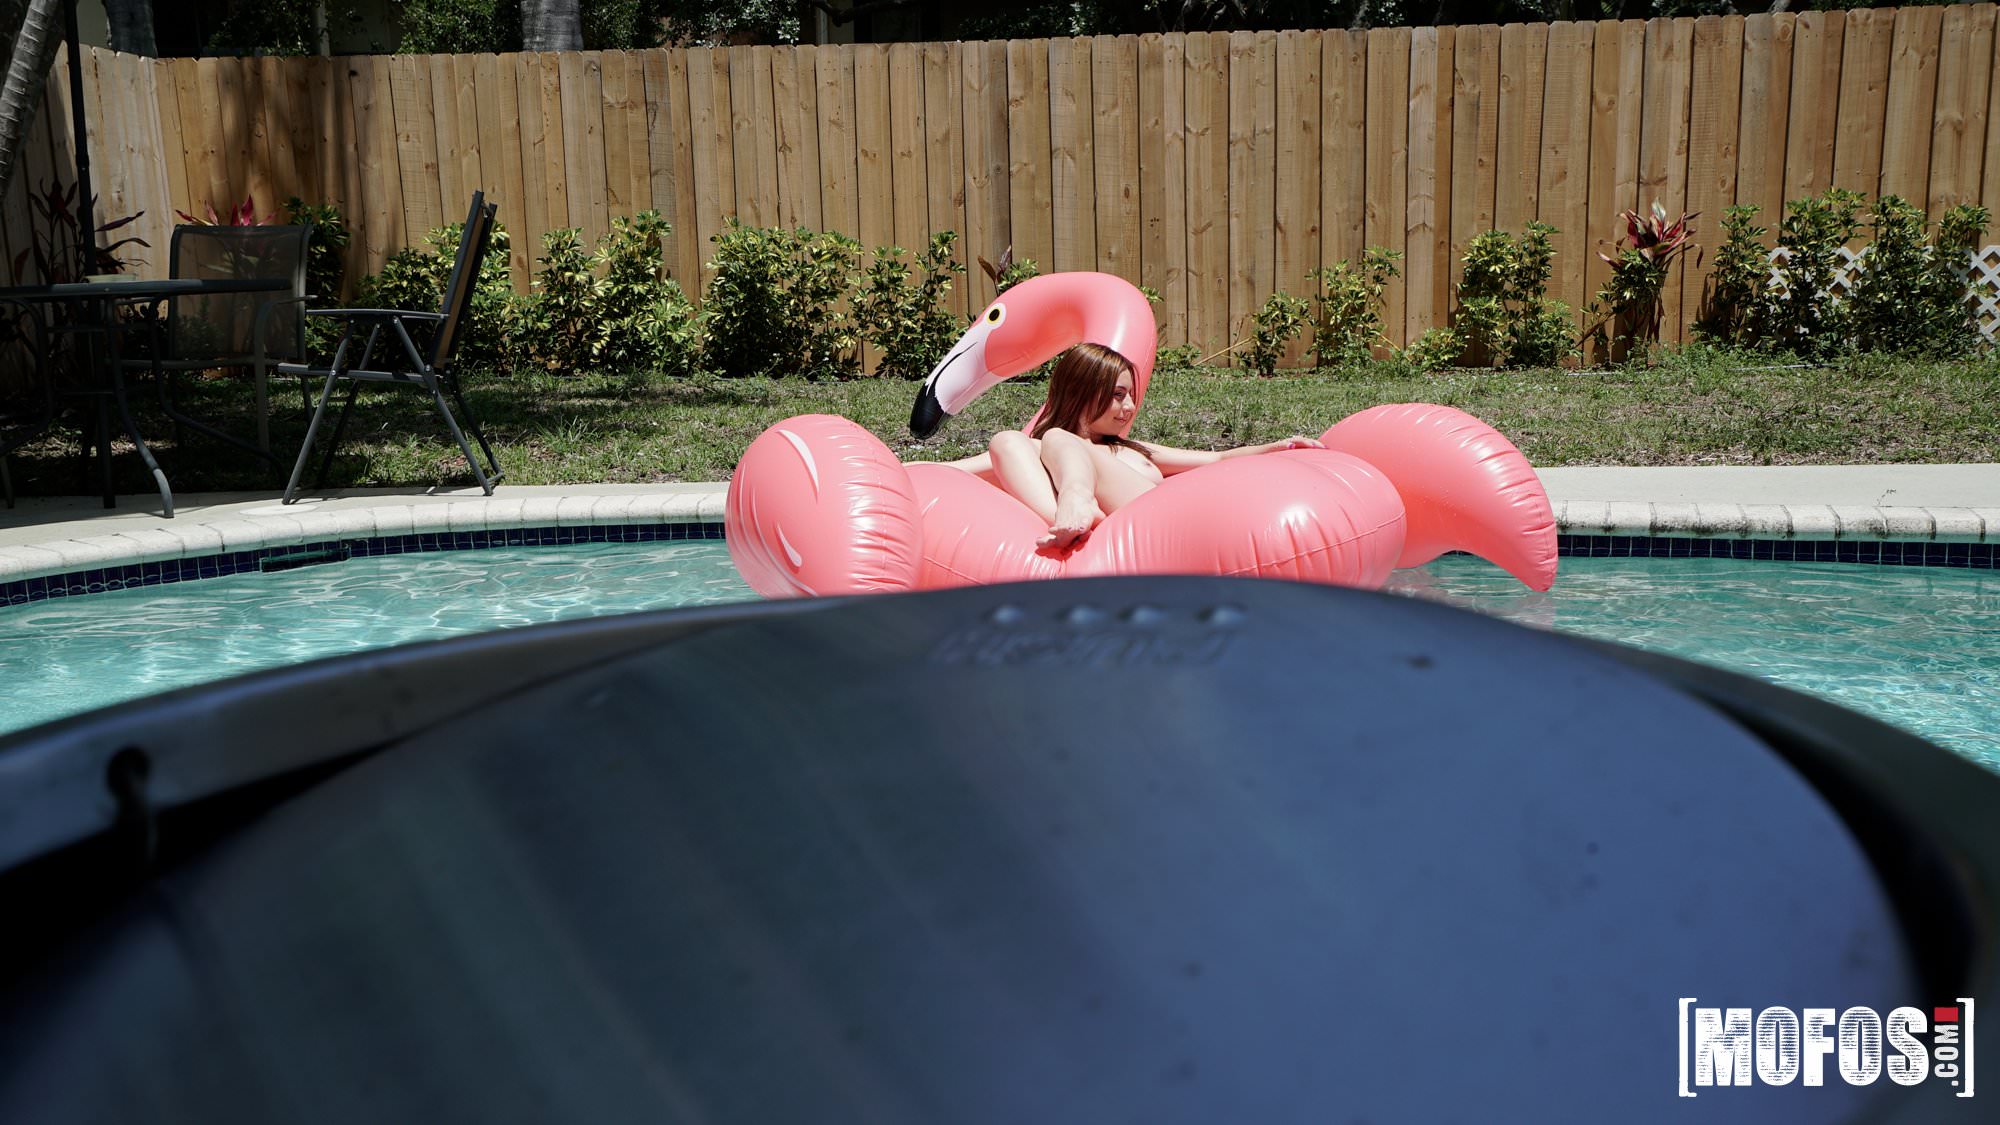 Mofos 'Poolside Peeking' starring Scarlett Johnson (Photo 18)